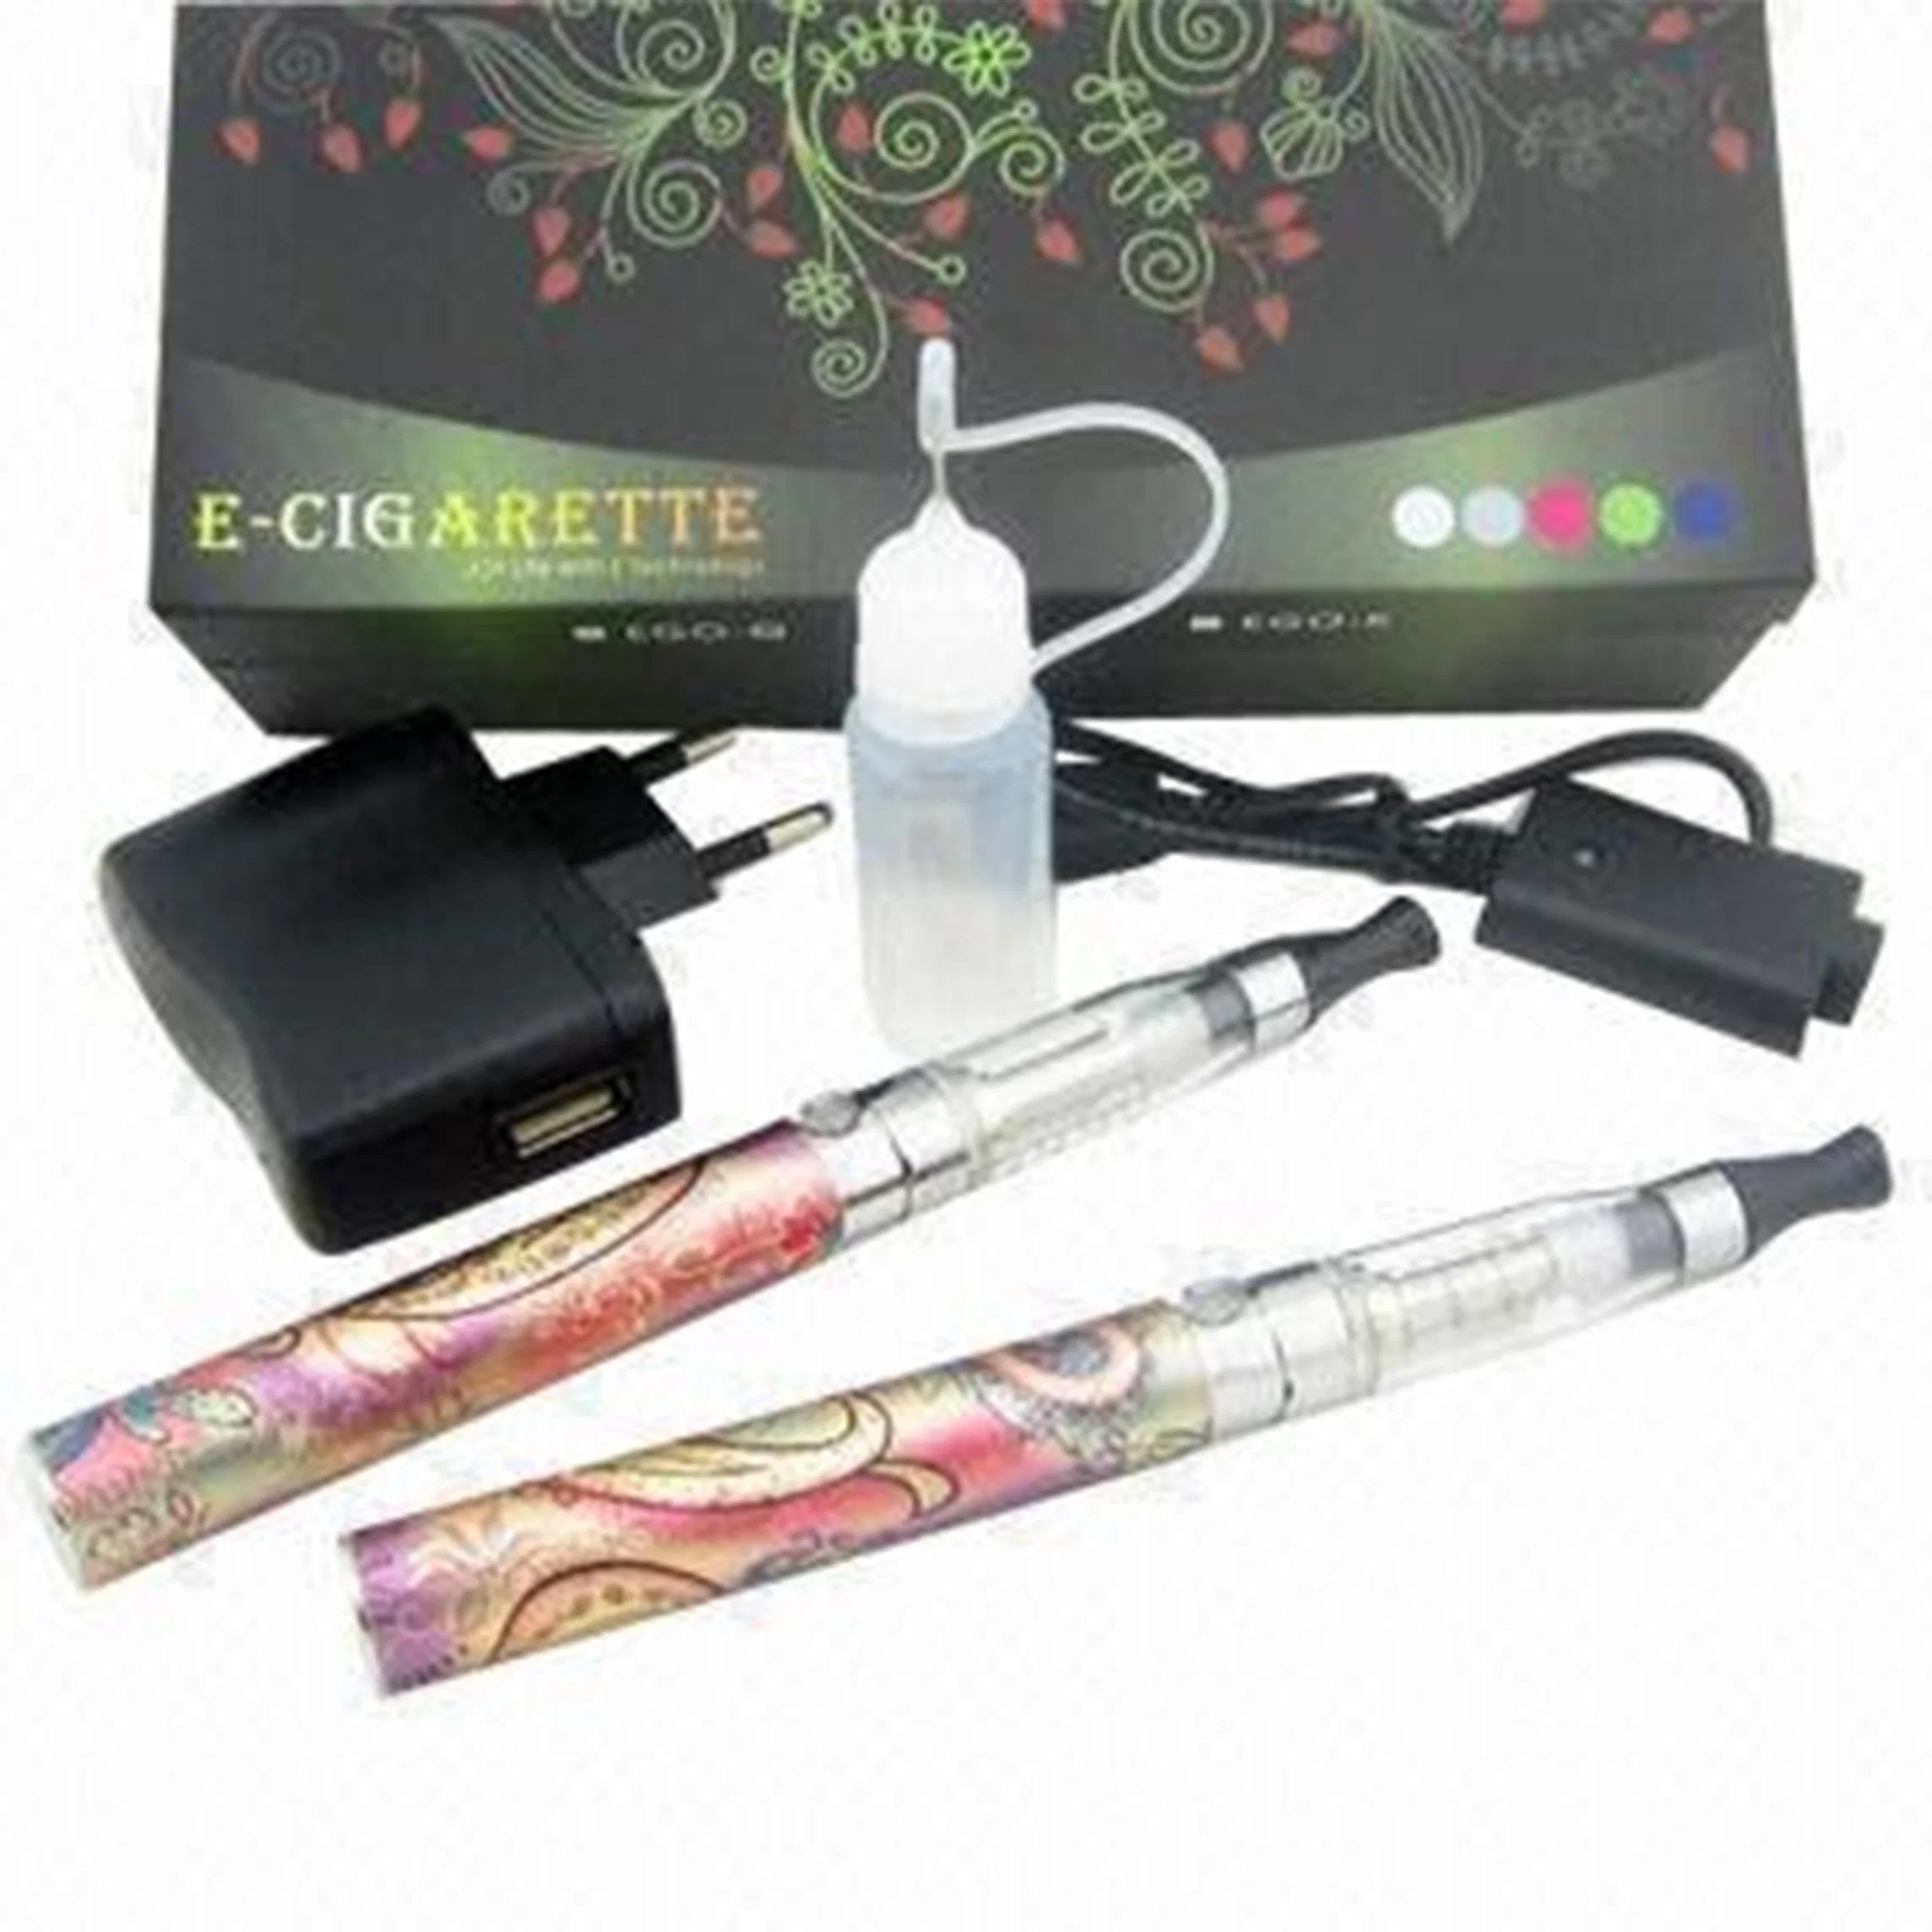 Hochwertige Pen Vaporizer / EGO Elektronische Zigaretten, 3,3 bis 4,2V Betriebsspannung, 112mm Länge